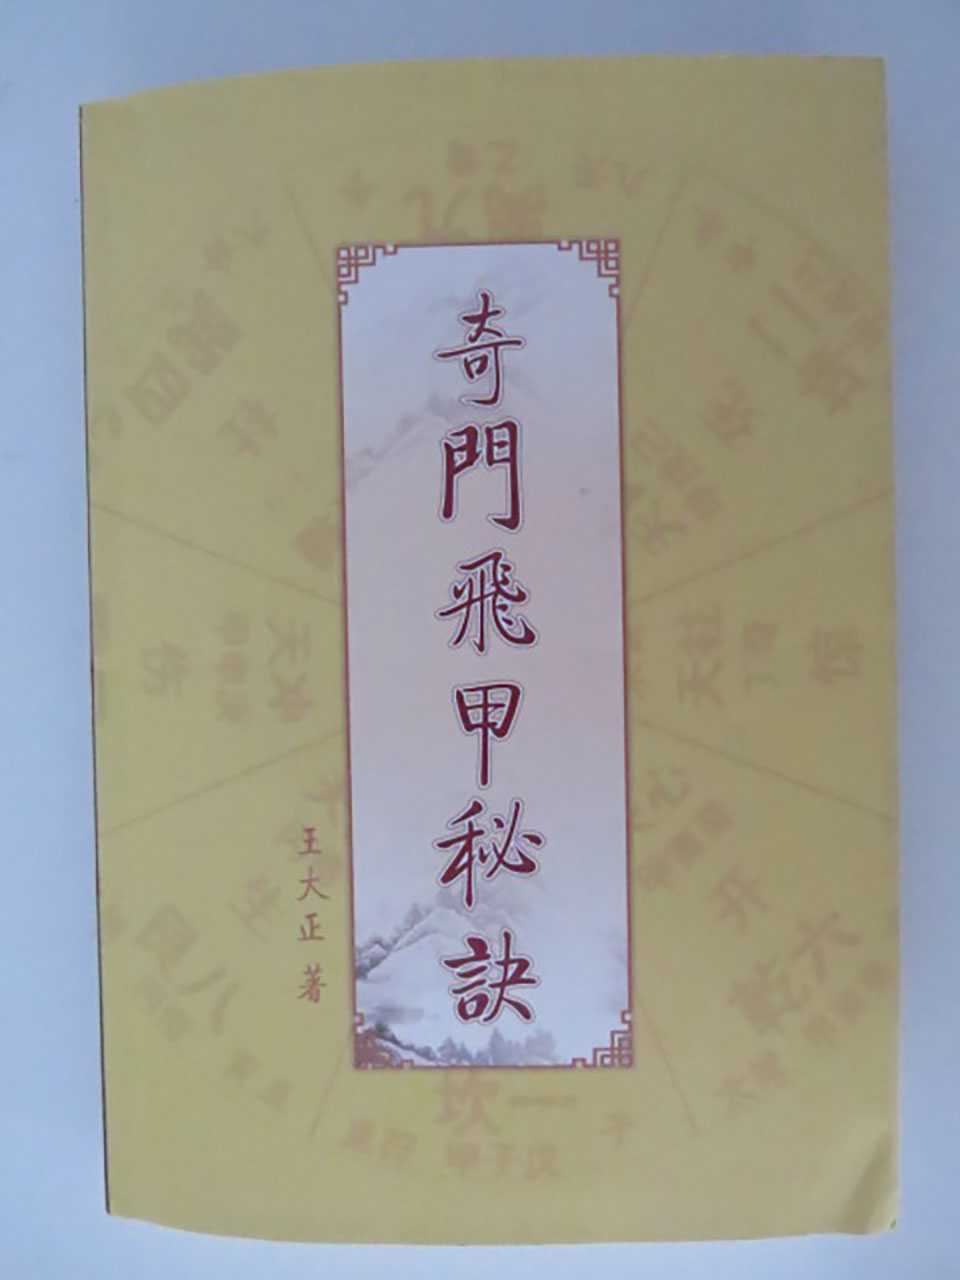 Wang Dazheng – Qi Men Fei Jia Secret Textbook 368 pages.pdf